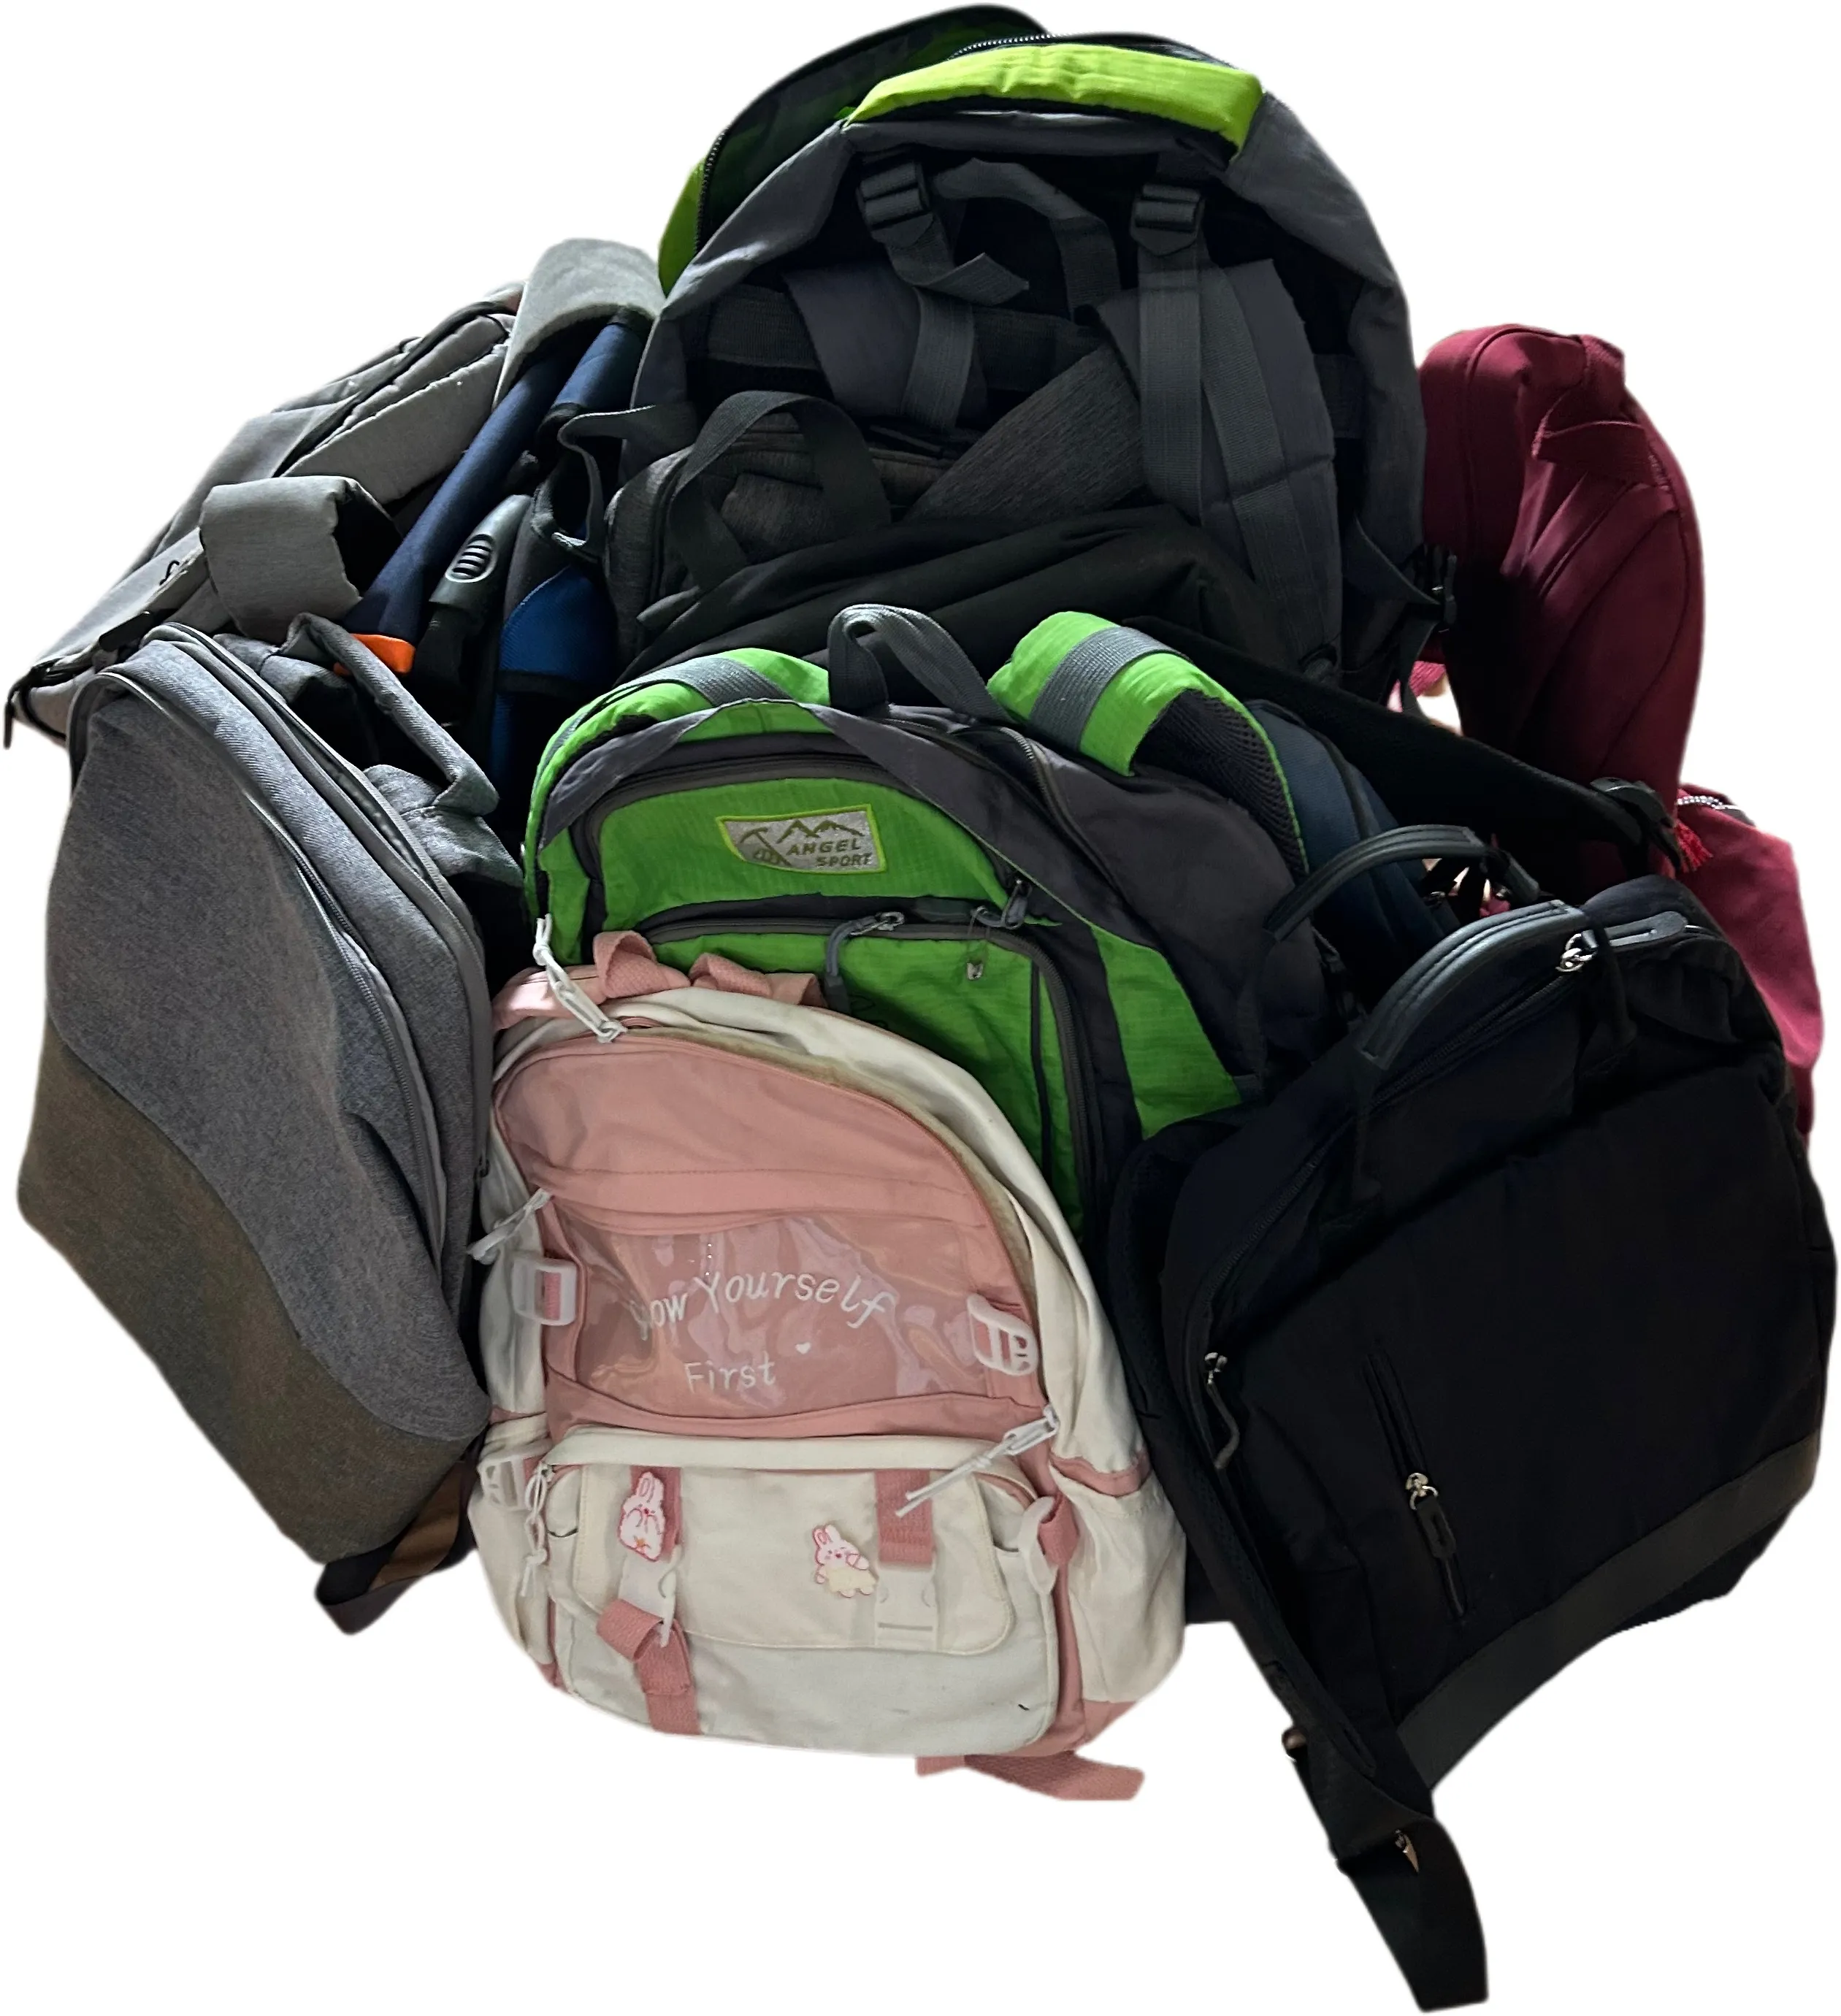 A8 뜨거운 판매 학교 배낭 학생 학교 가방 도매 노트북 가방 남성과 여성을위한 하이 퀄리티 여행 가방 베일을 사용